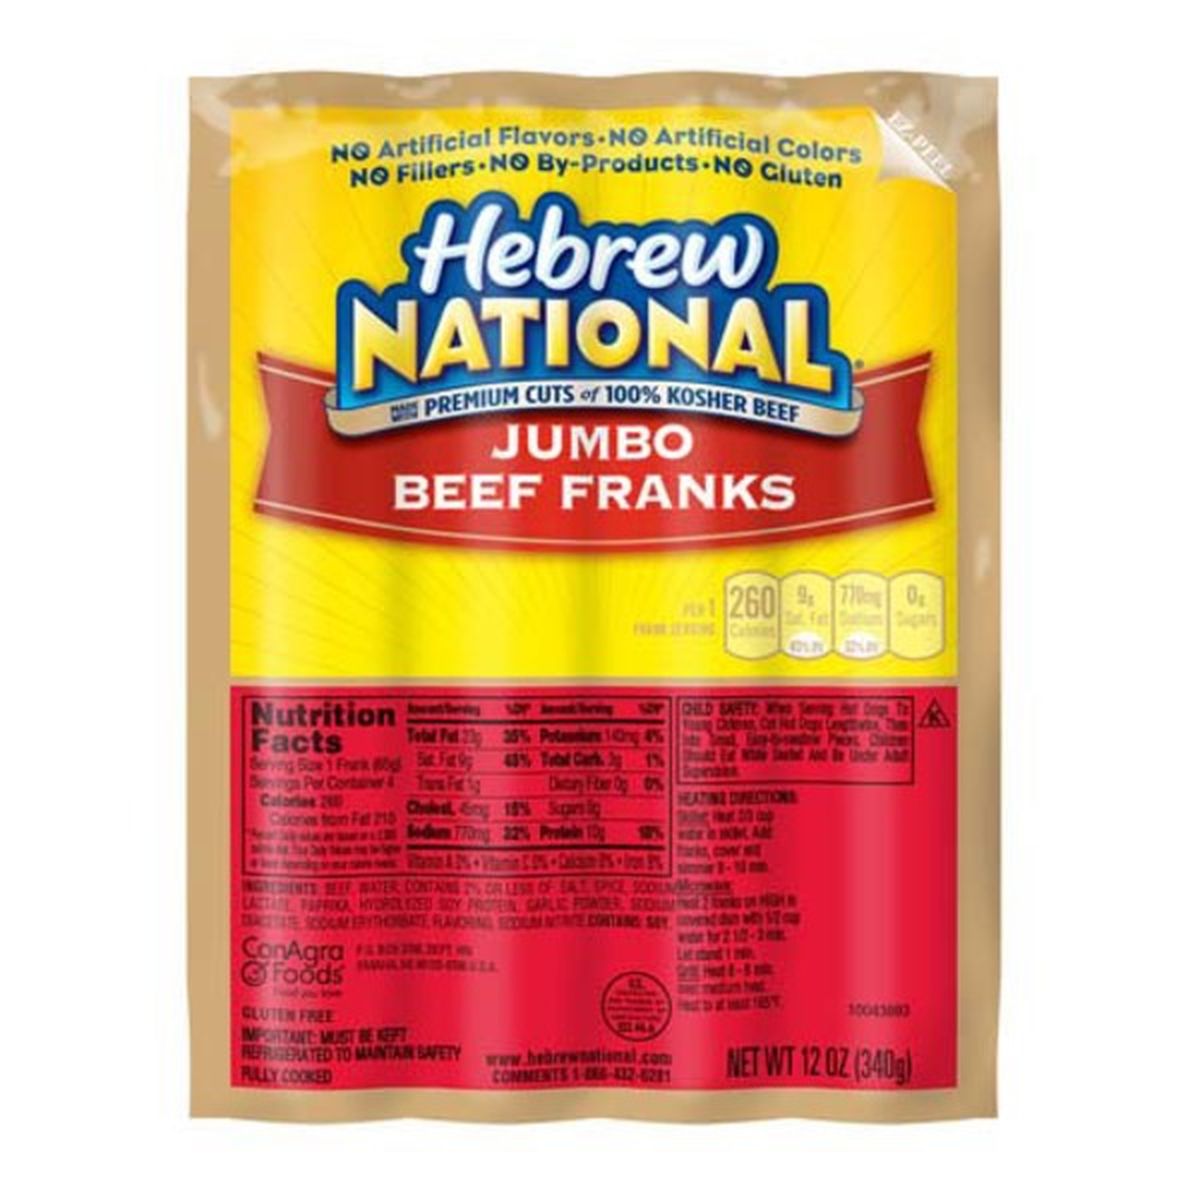 Calories in Hebrew National Jumbo Beef Franks